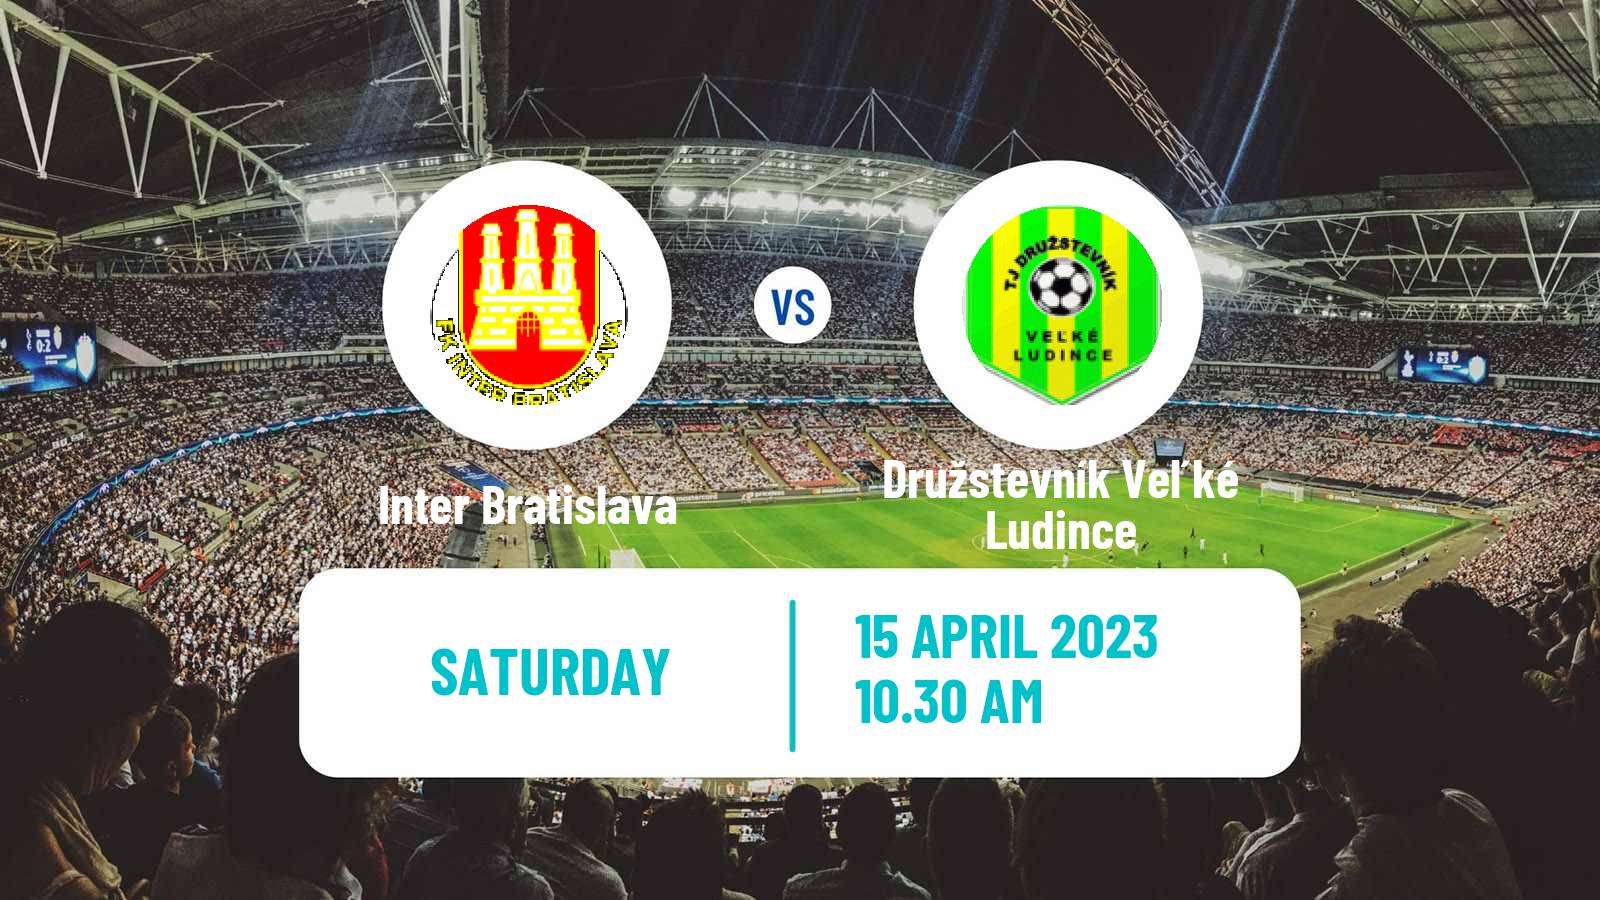 Soccer Slovak 3 Liga West Inter Bratislava - Družstevník Veľké Ludince